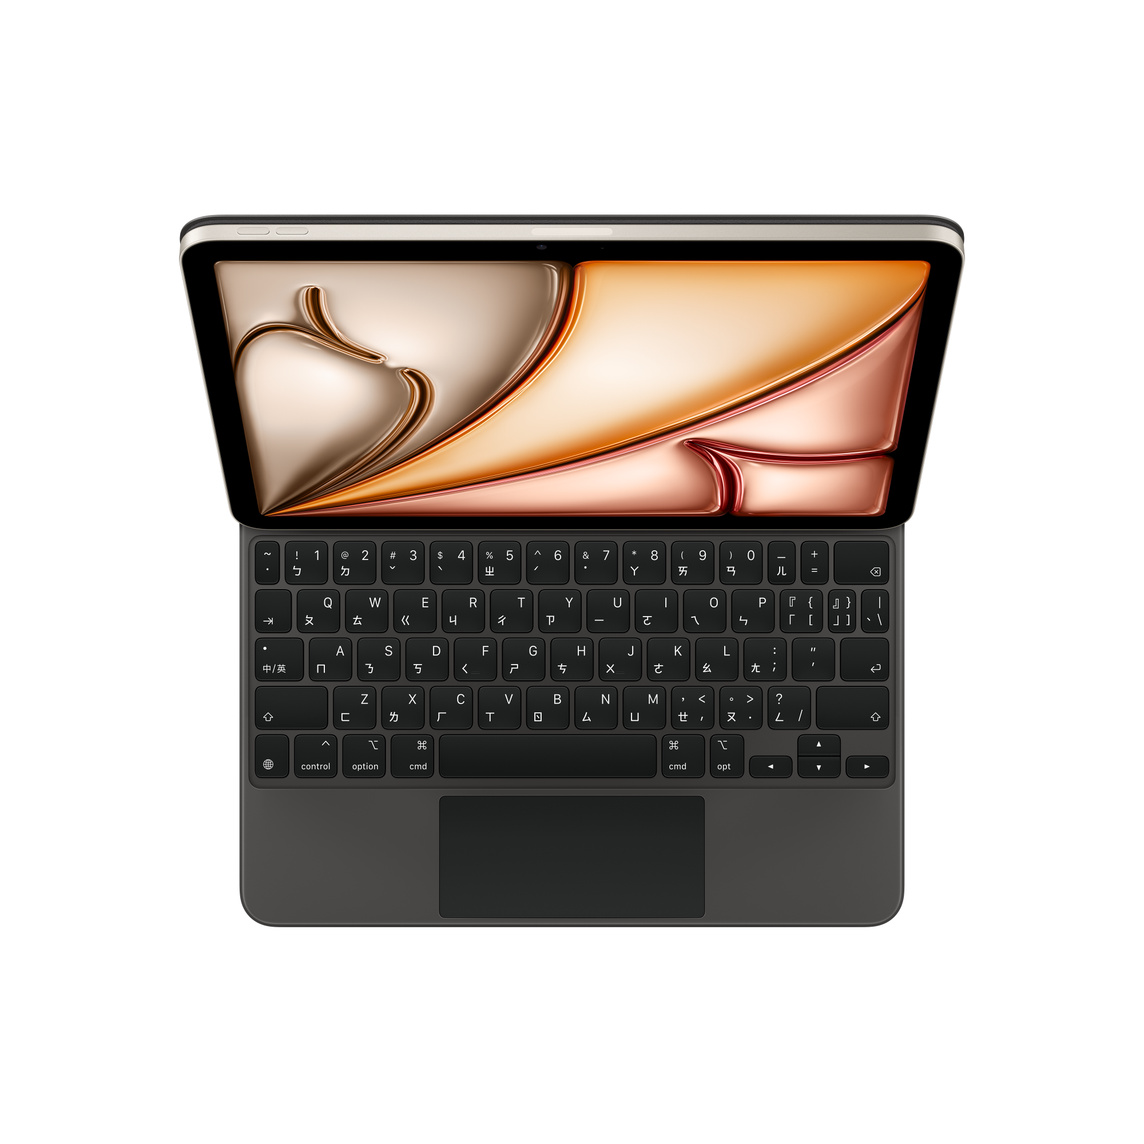 圖片展示與 iPad Air 貼合的黑色巧控鍵盤，鍵盤上有白色字體的黑色按鍵、倒 T 形排列的方向鍵和內建的觸控式軌跡板。